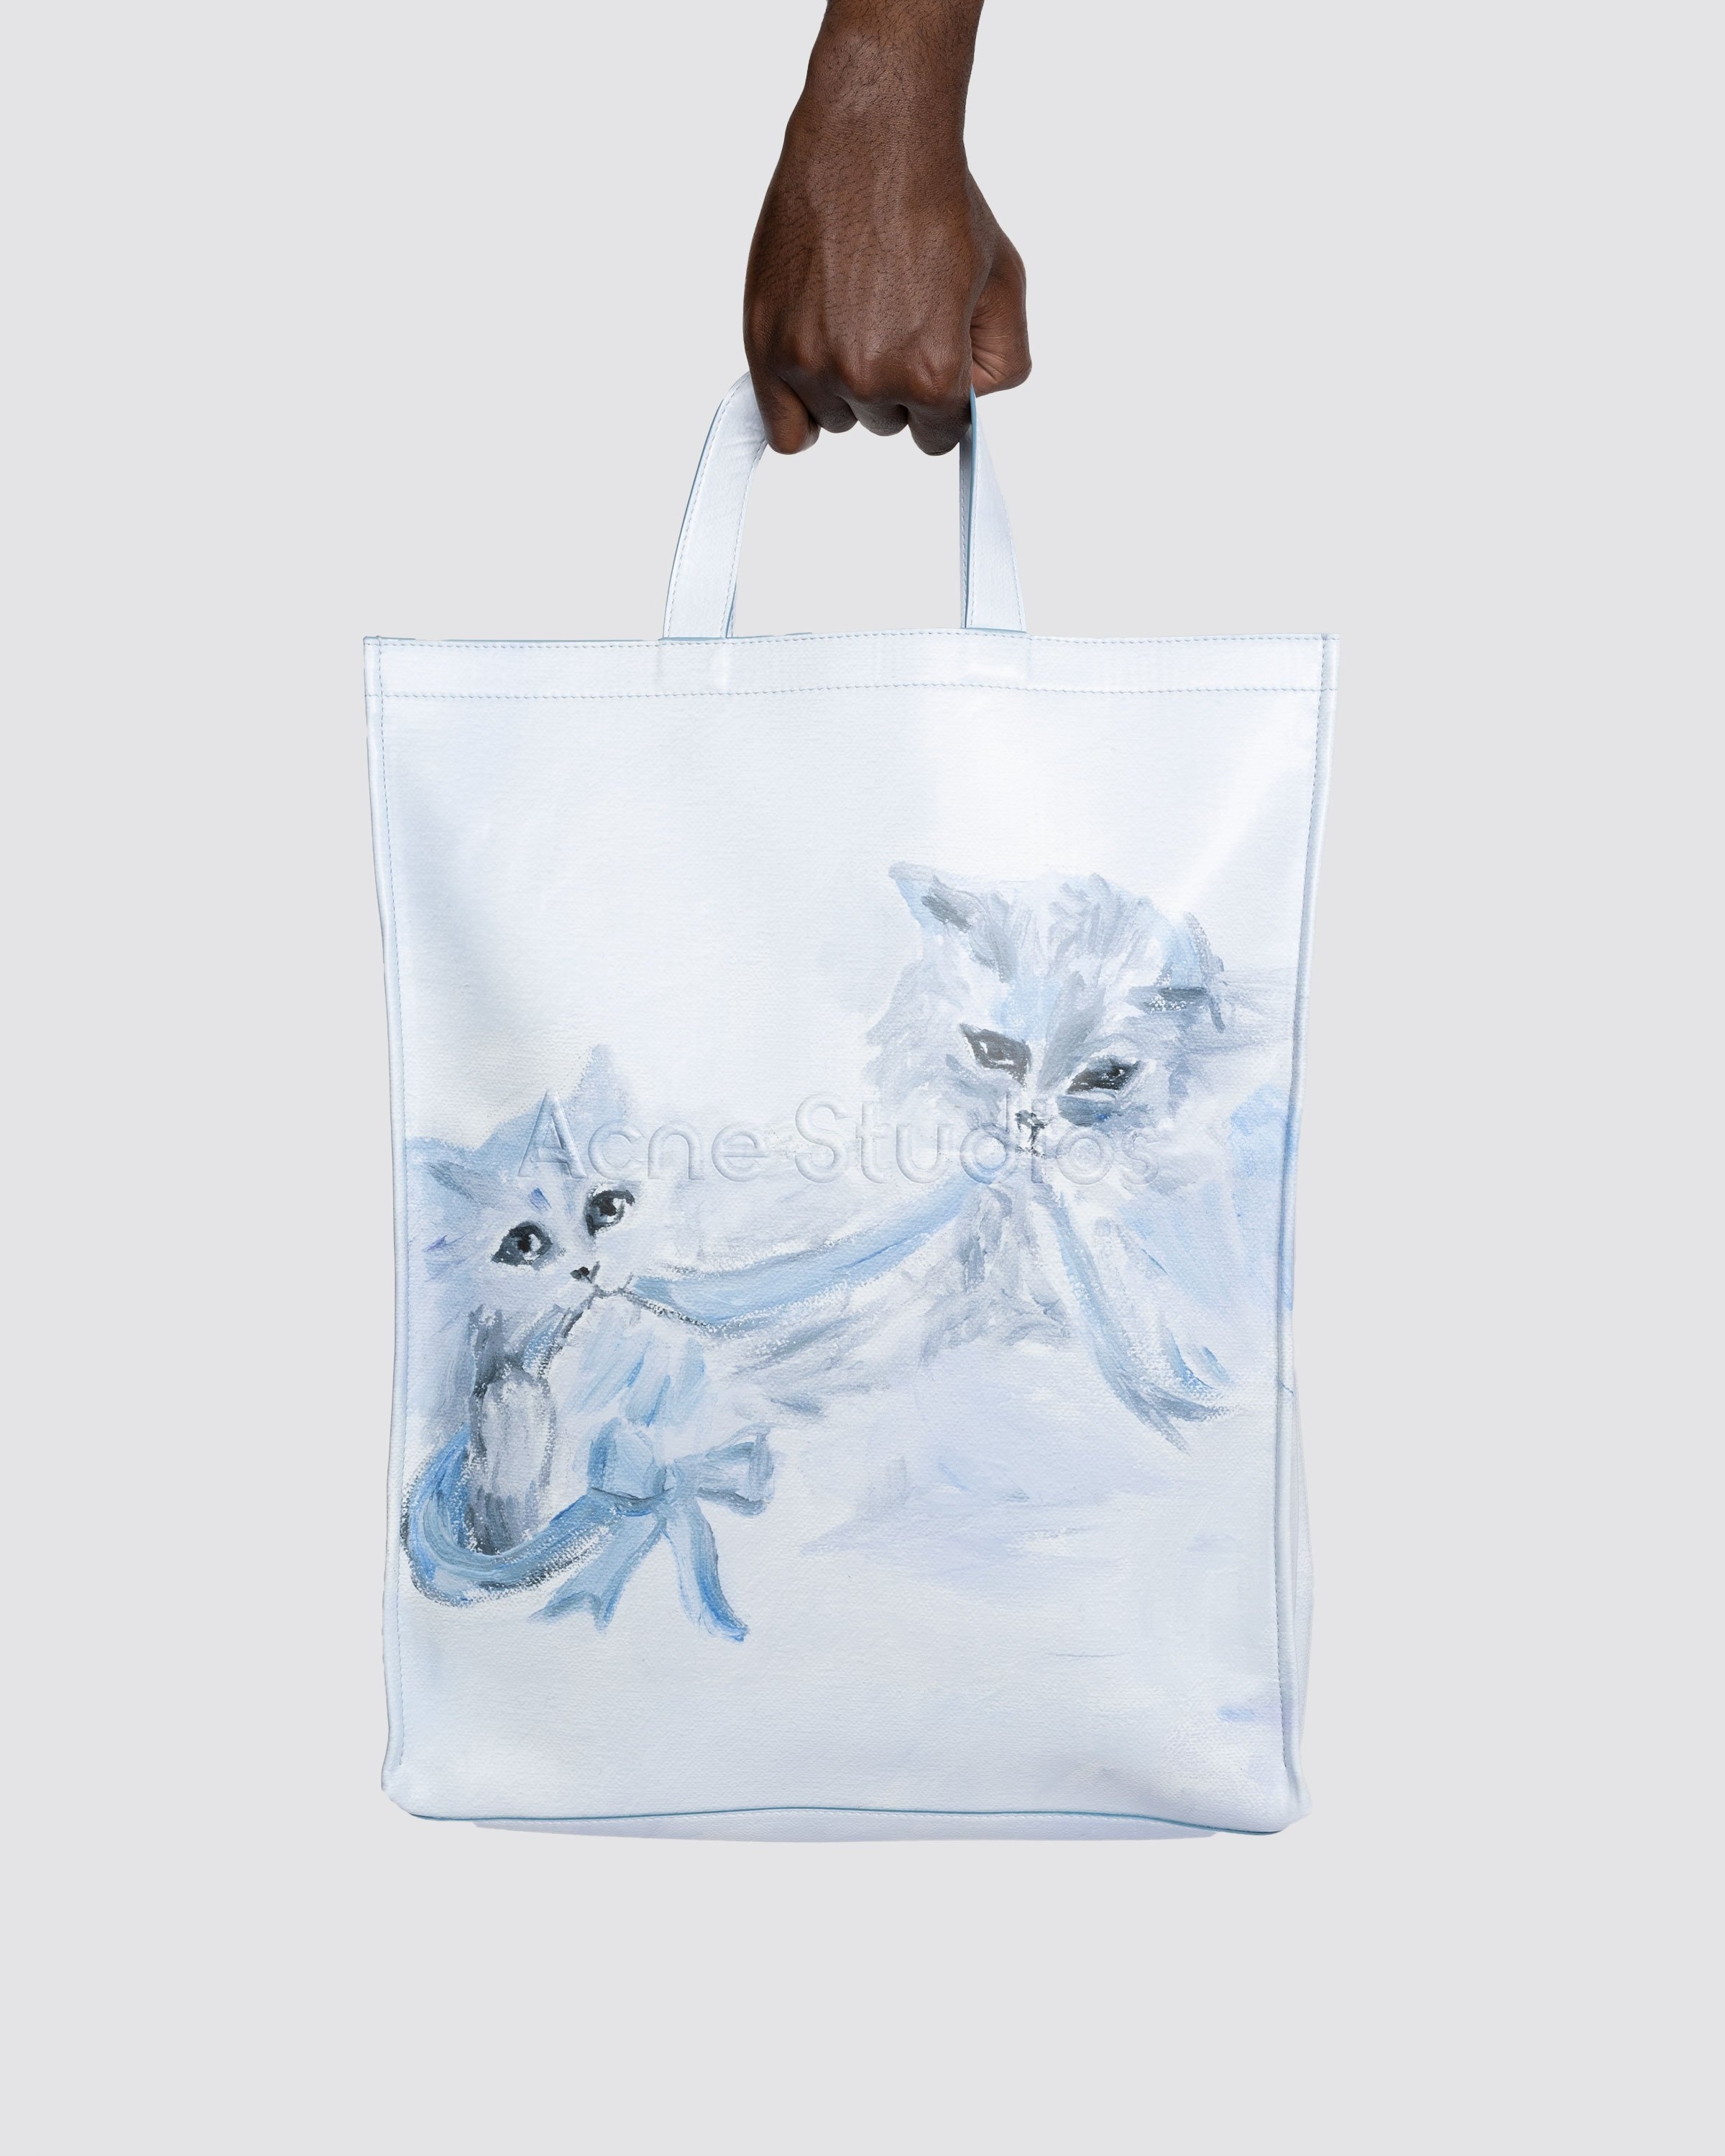 Acne Studios – Cat Print Logo Tote Bag Blue - Bags - Blue - Image 3